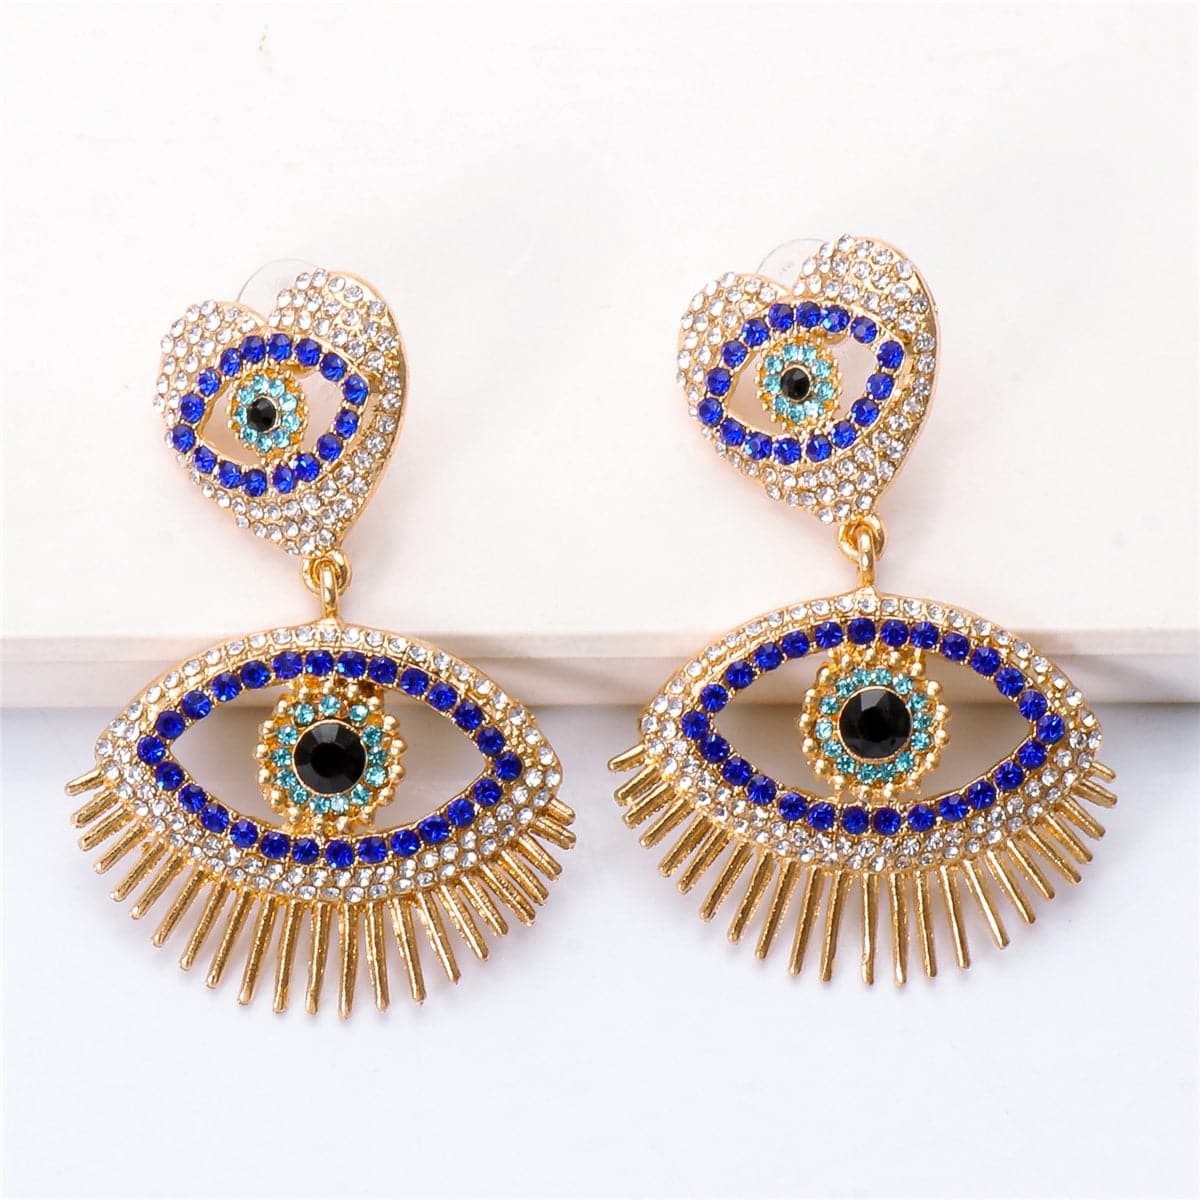 Blue Cubic Zirconia & 18K Gold-Plated Evil Eye Drop Earrings